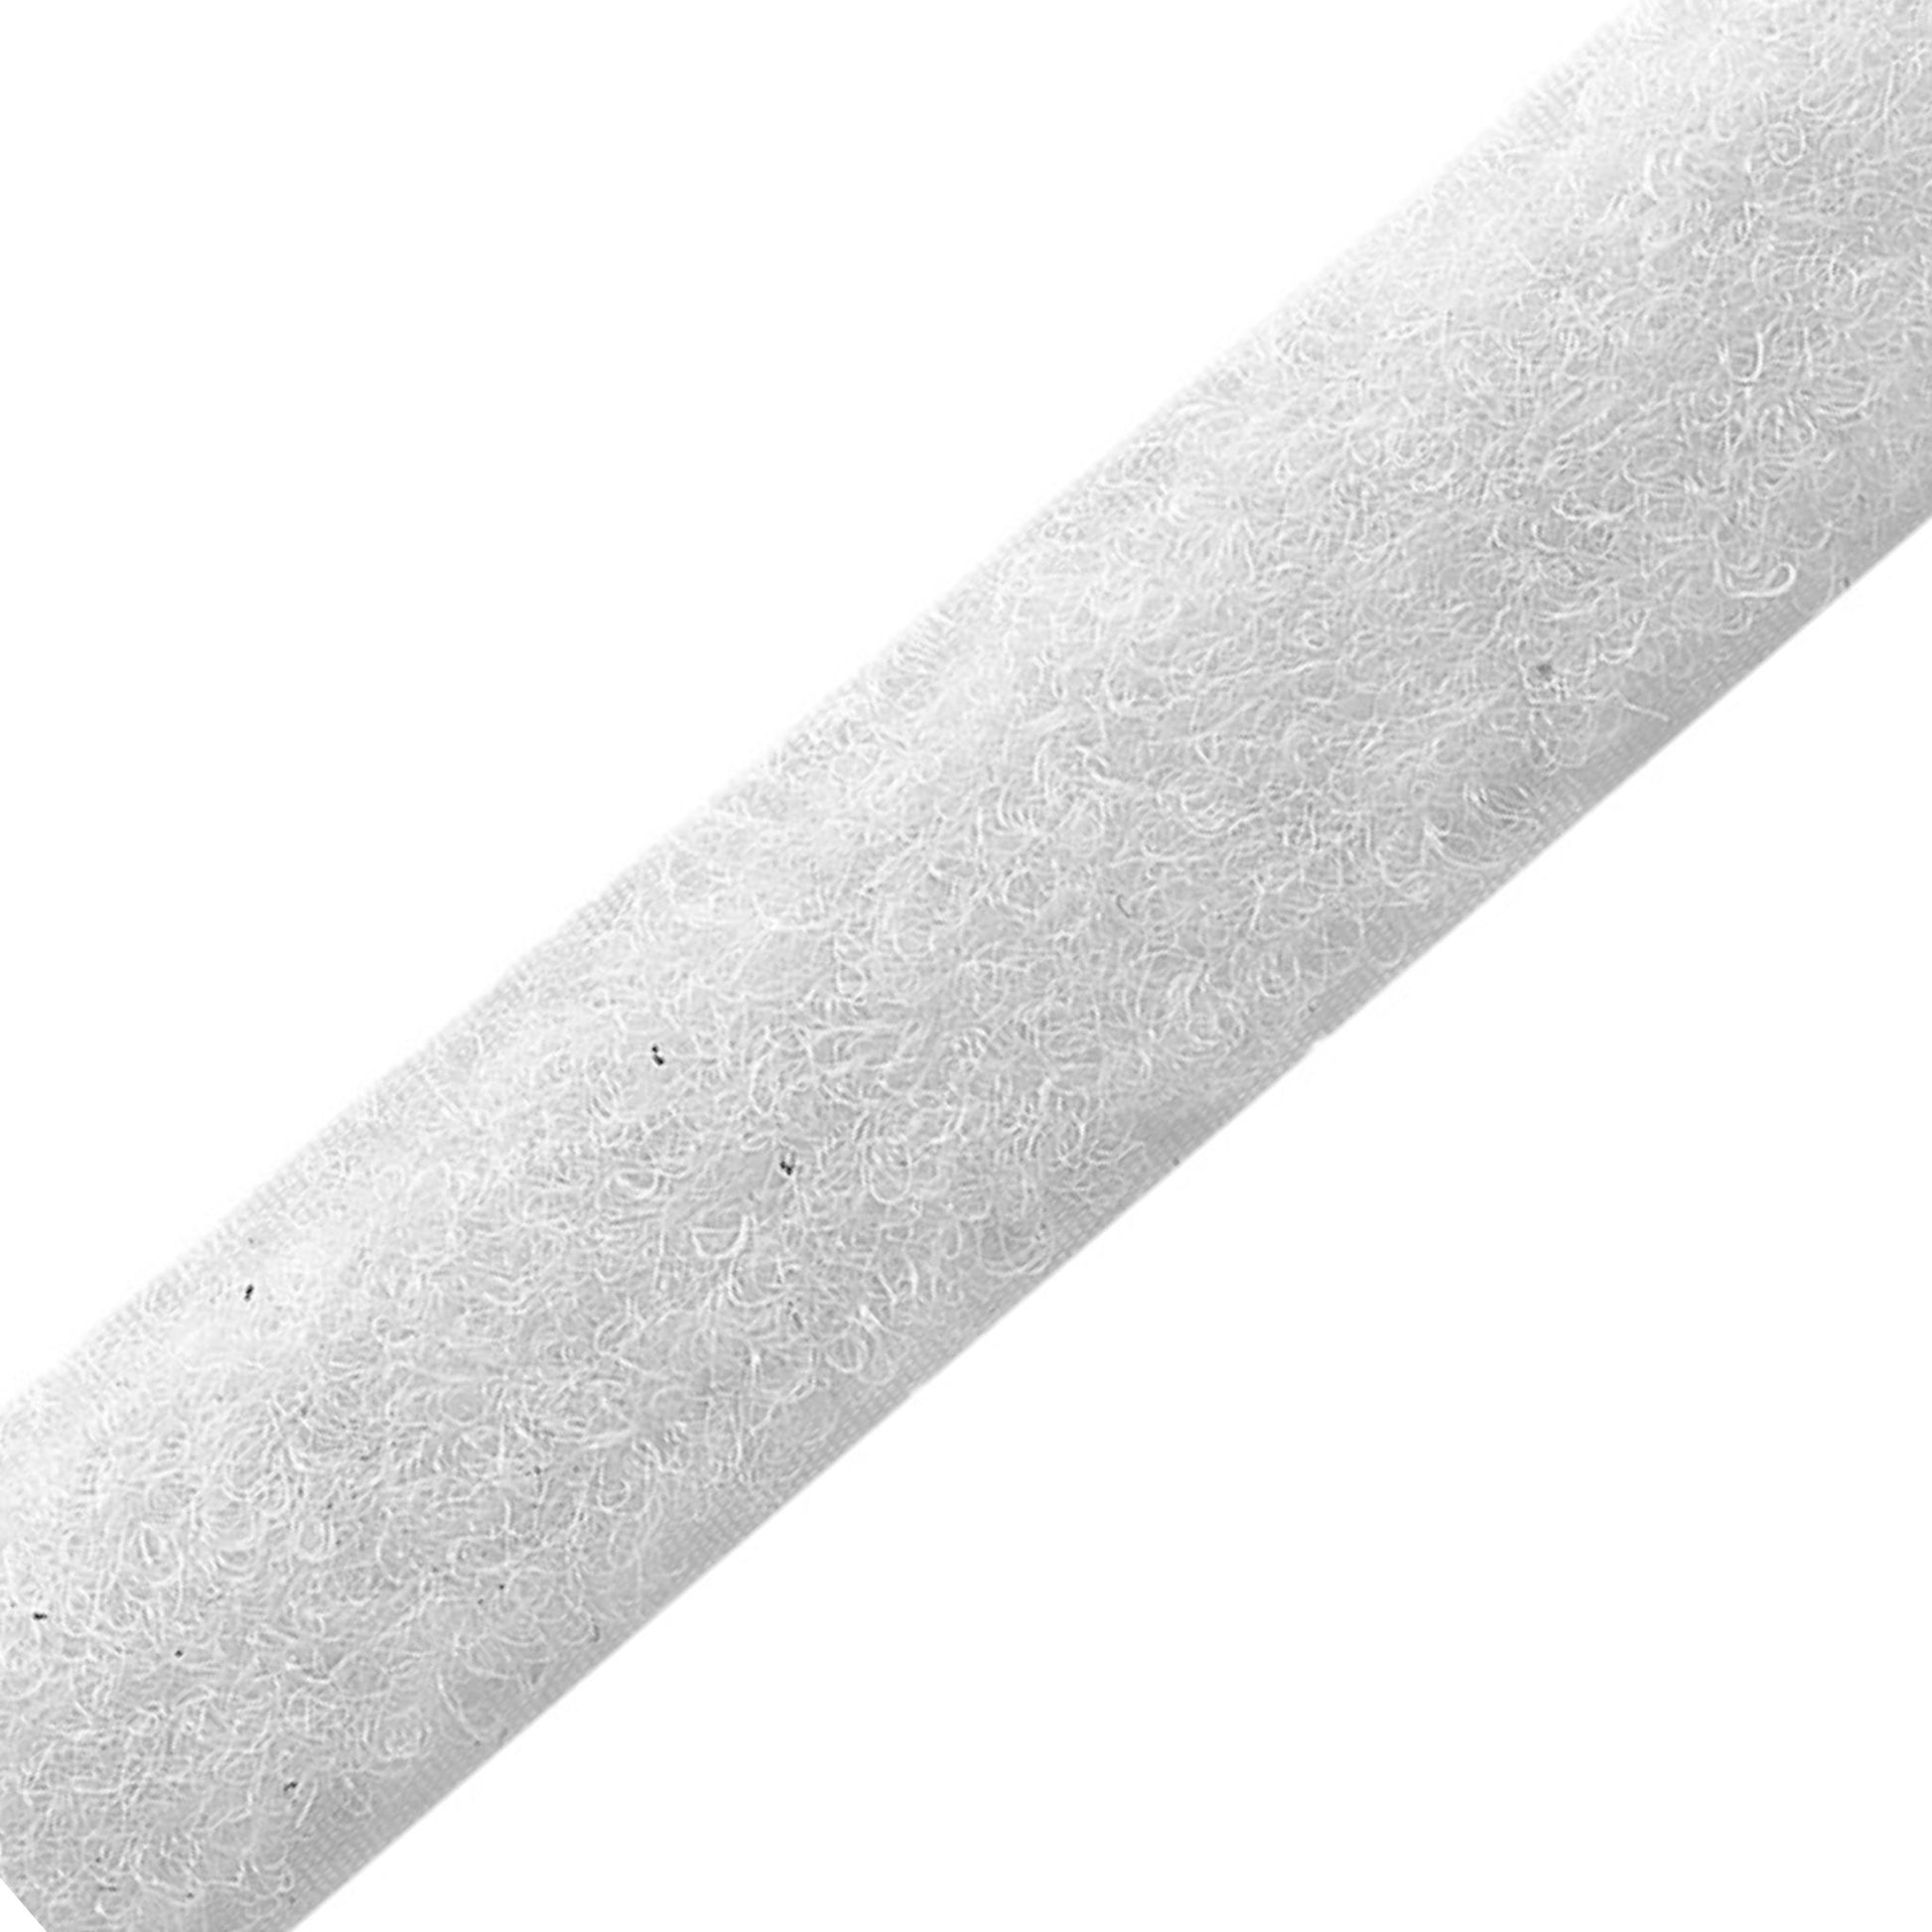 Flauschband zum Annähen weiß 2 cm breit